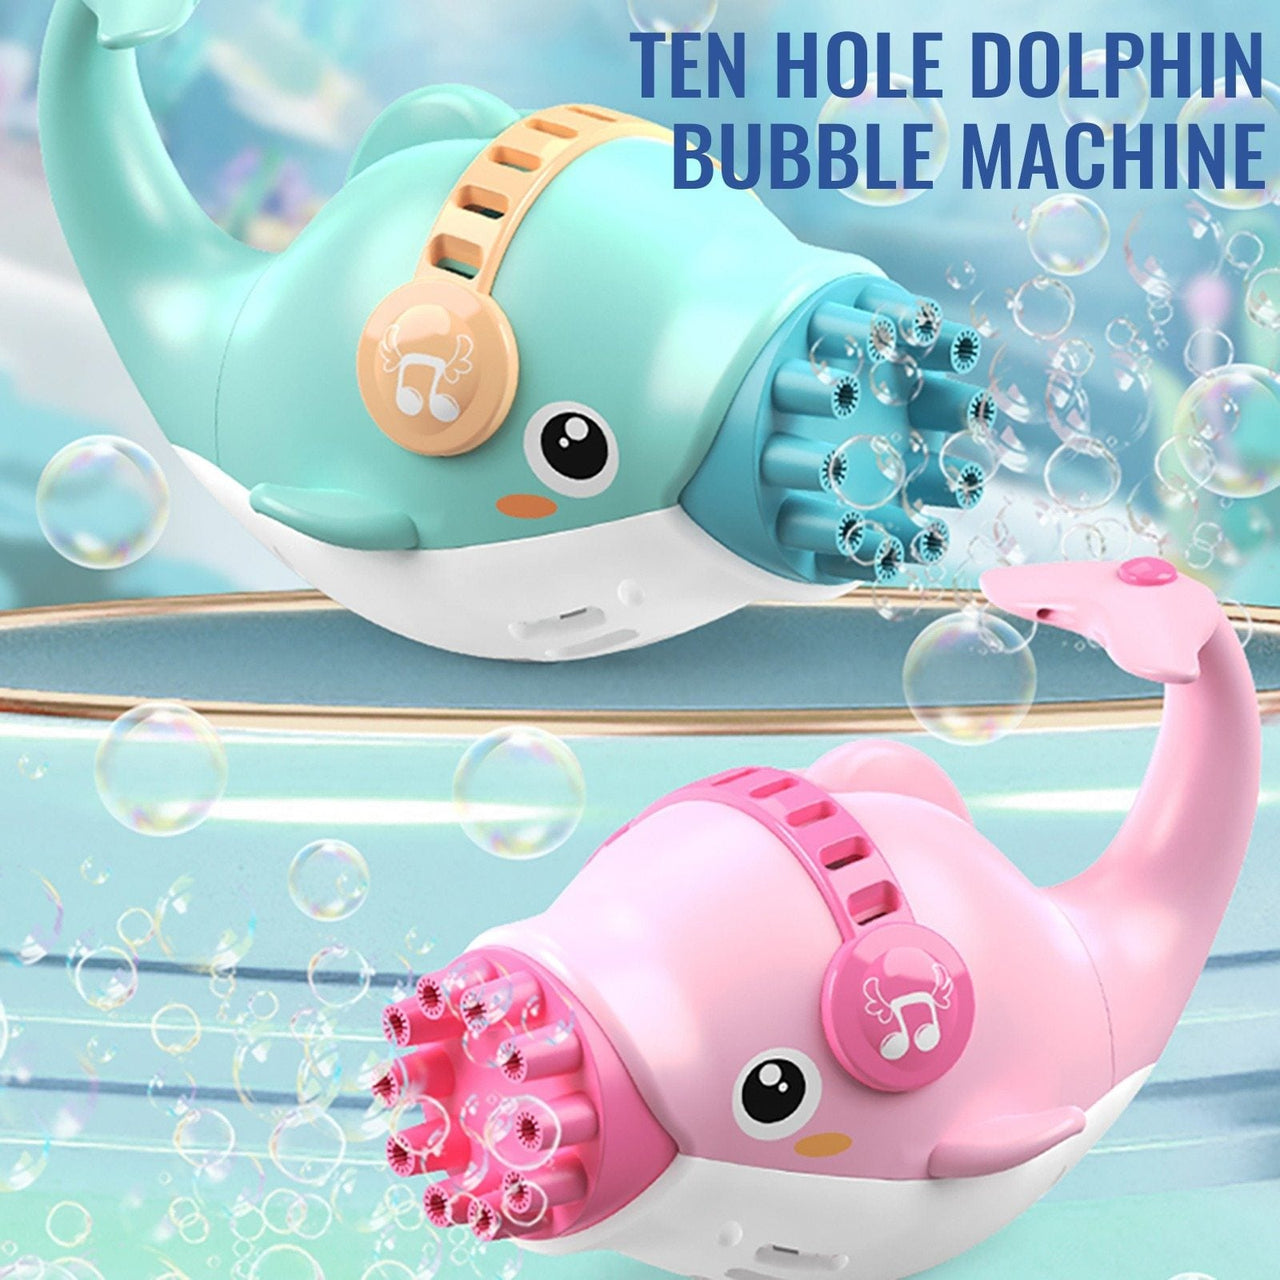 Dolphin Bubble Machine